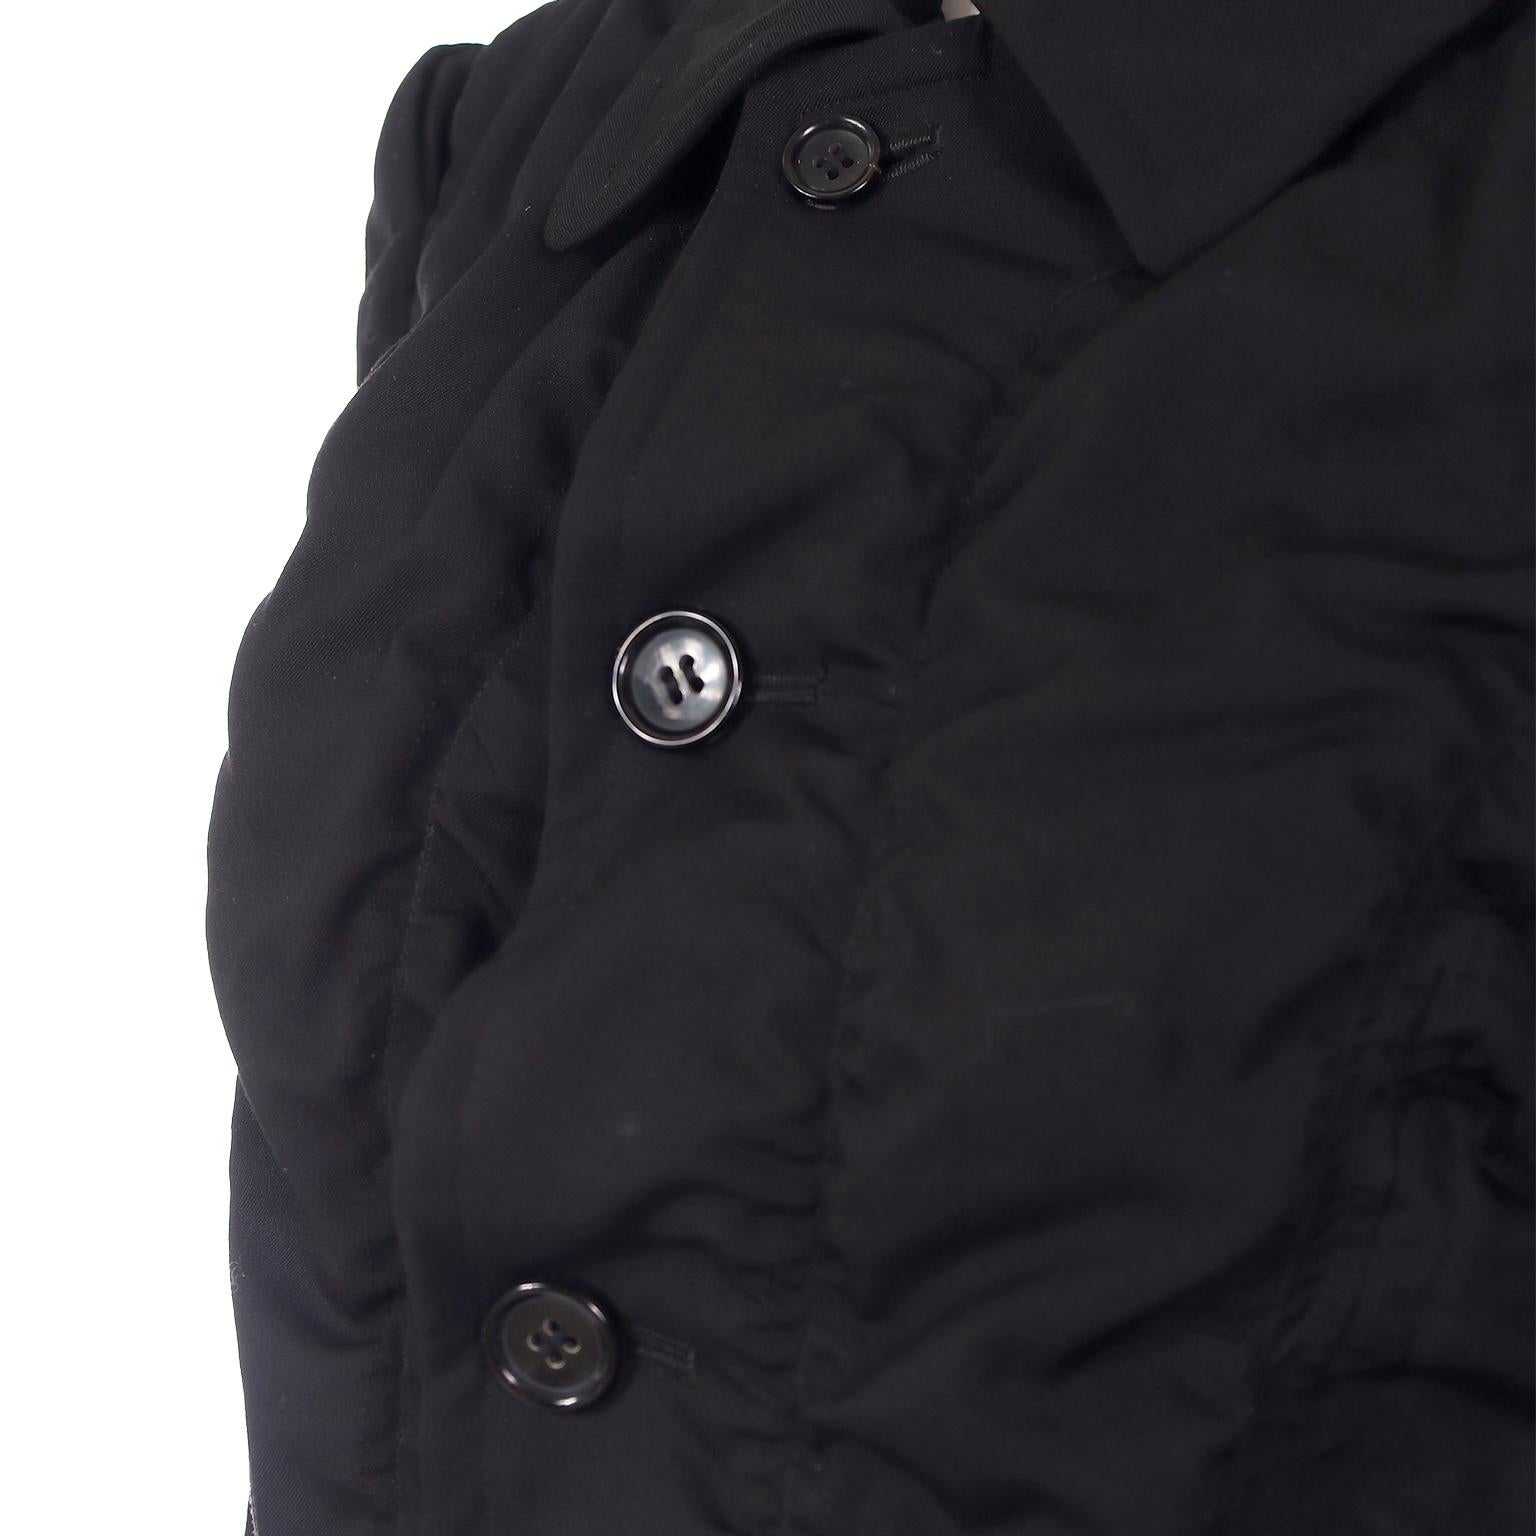 2010 Comme des Garcons Black Avant Garde Ruched Coat 3